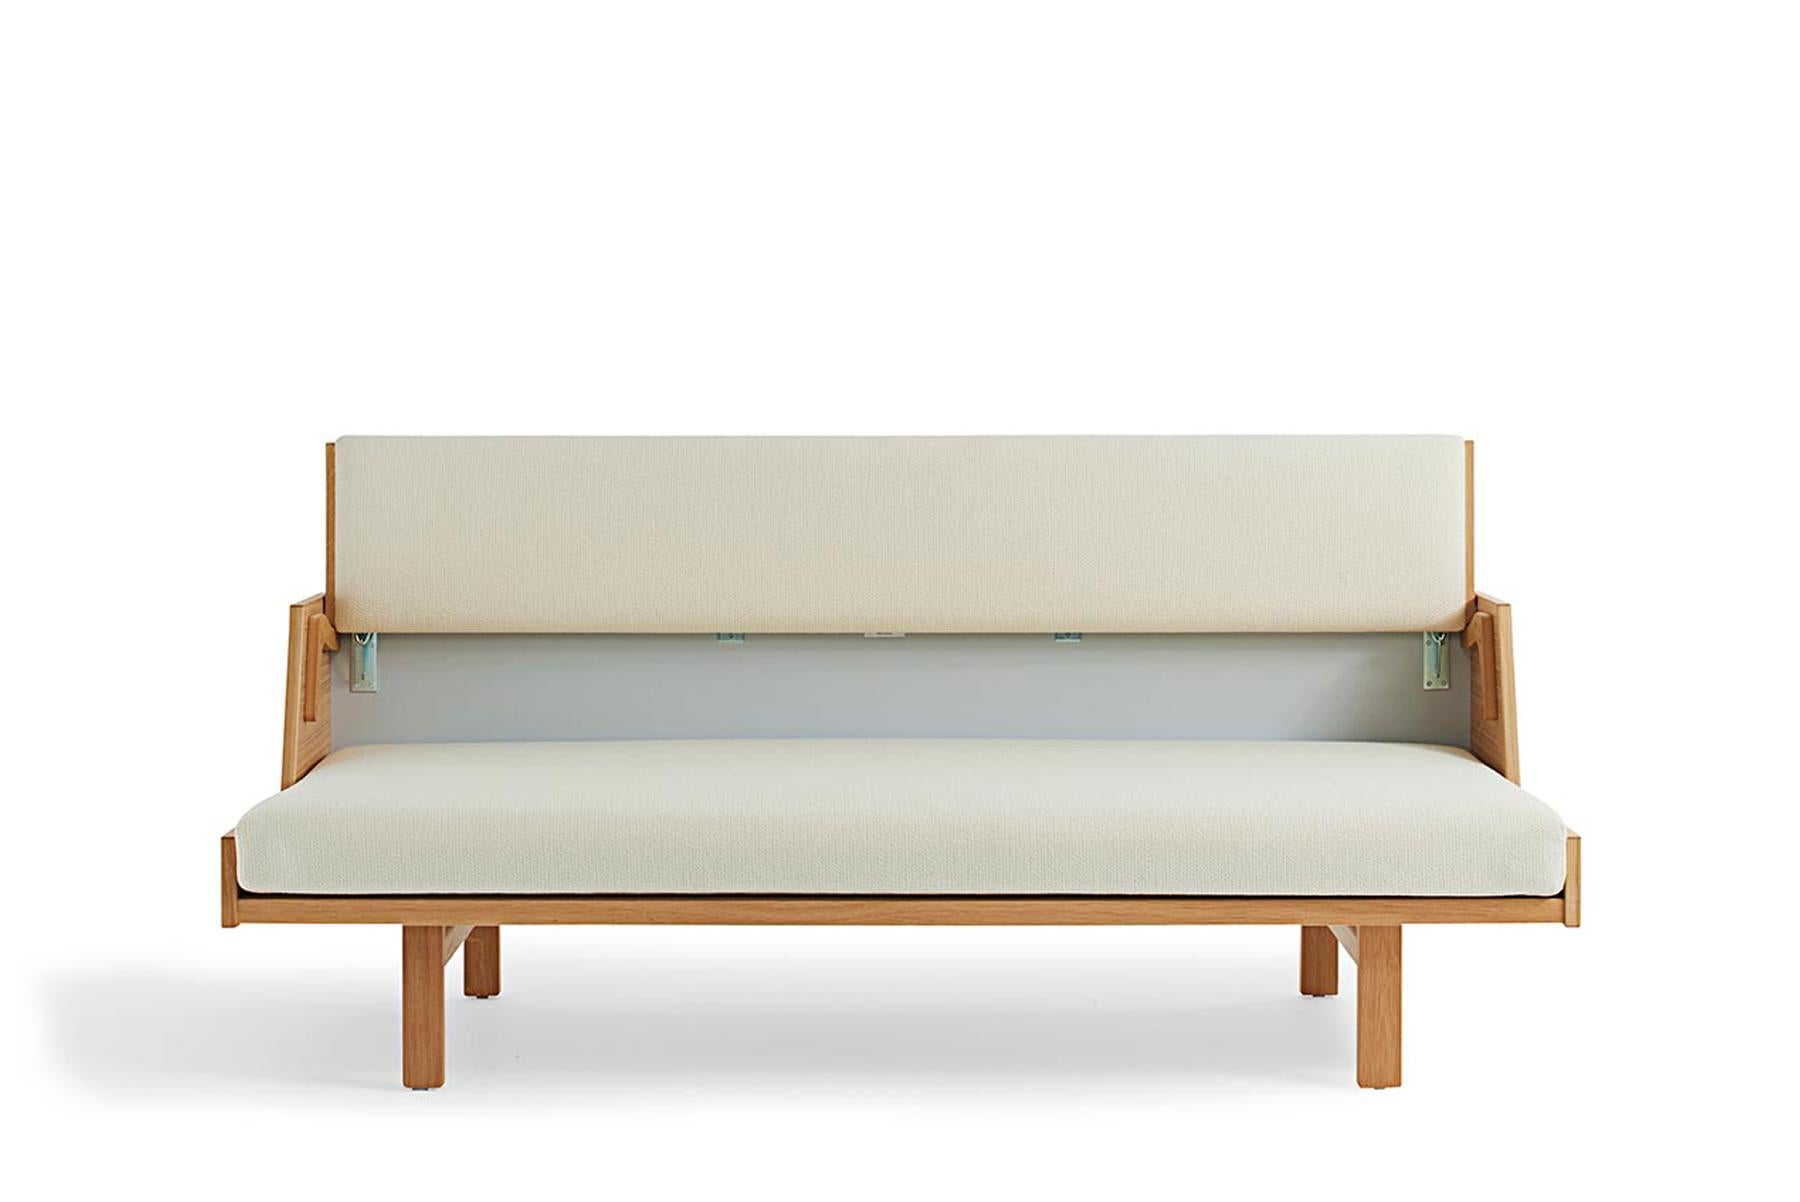 Das 1954 von Hans Wegner entworfene Daybed GE 258 ist ein vielseitiges Möbelstück. Die gepolsterte Rückenlehne lässt sich anheben, um ein geräumiges Bett zu erhalten. Diese Bank aus Massivholz wird in der GETAMA-Fabrik in Gedsted, Dänemark, von